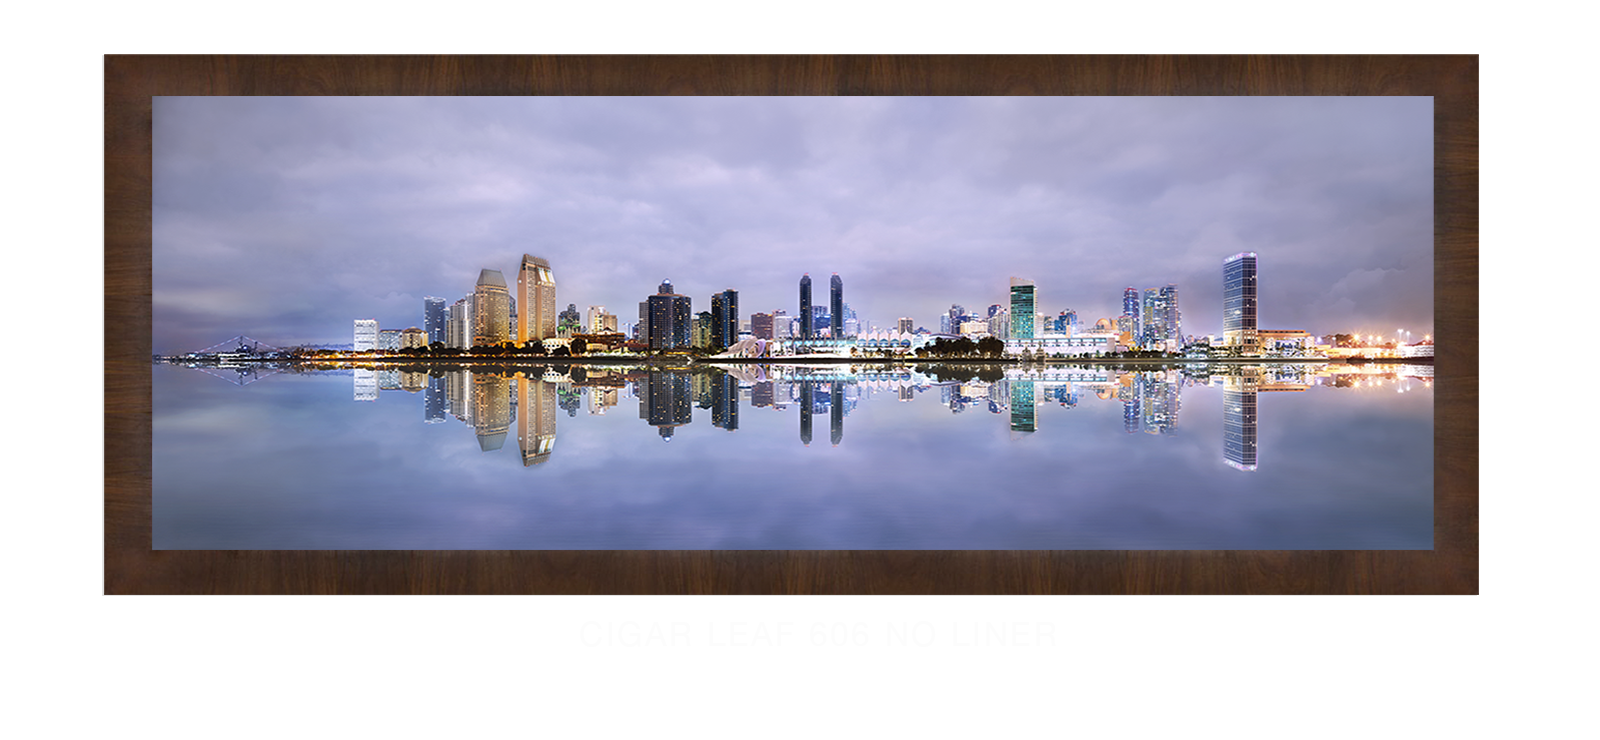 22INTERLUDE DIEGO Cigar Leaf 606 w_No Liner T